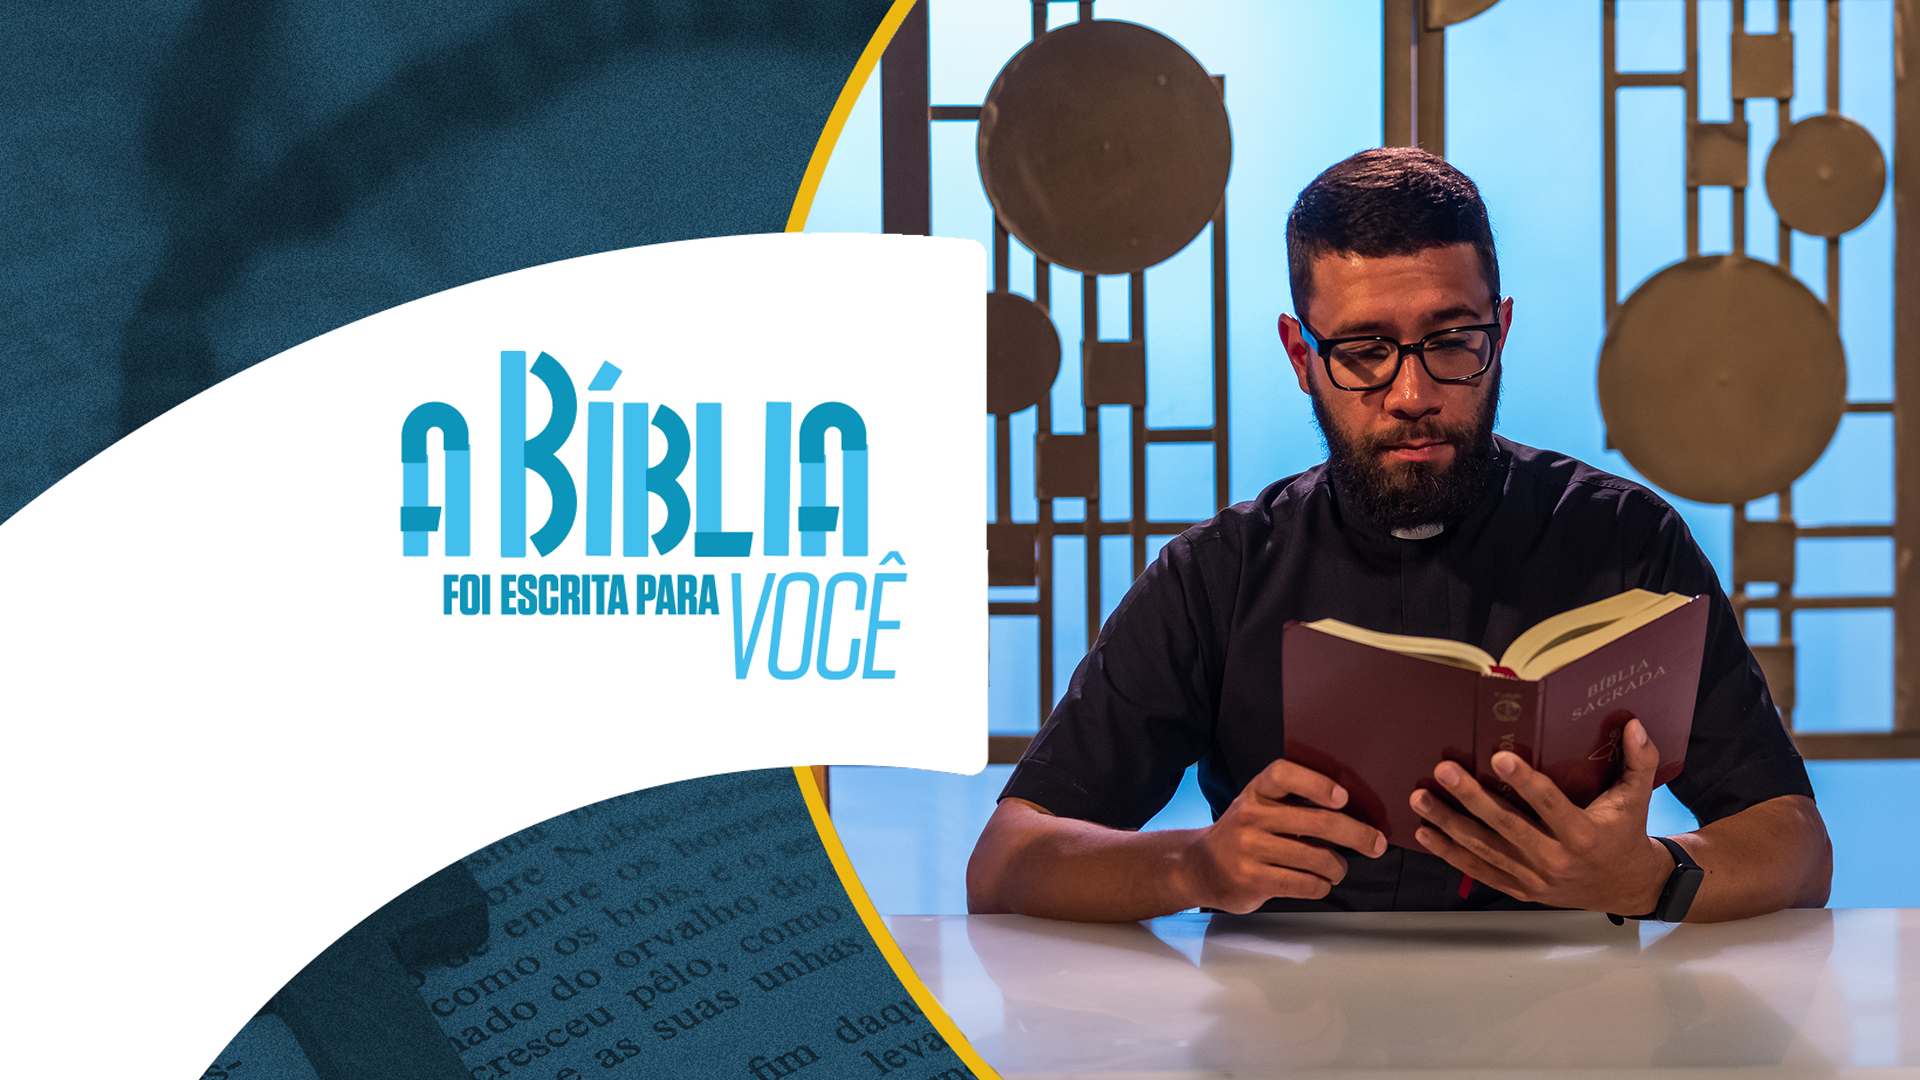 A Bíblia foi escrita para você: Deus é rico em misericórdia | Kaíque Duarte